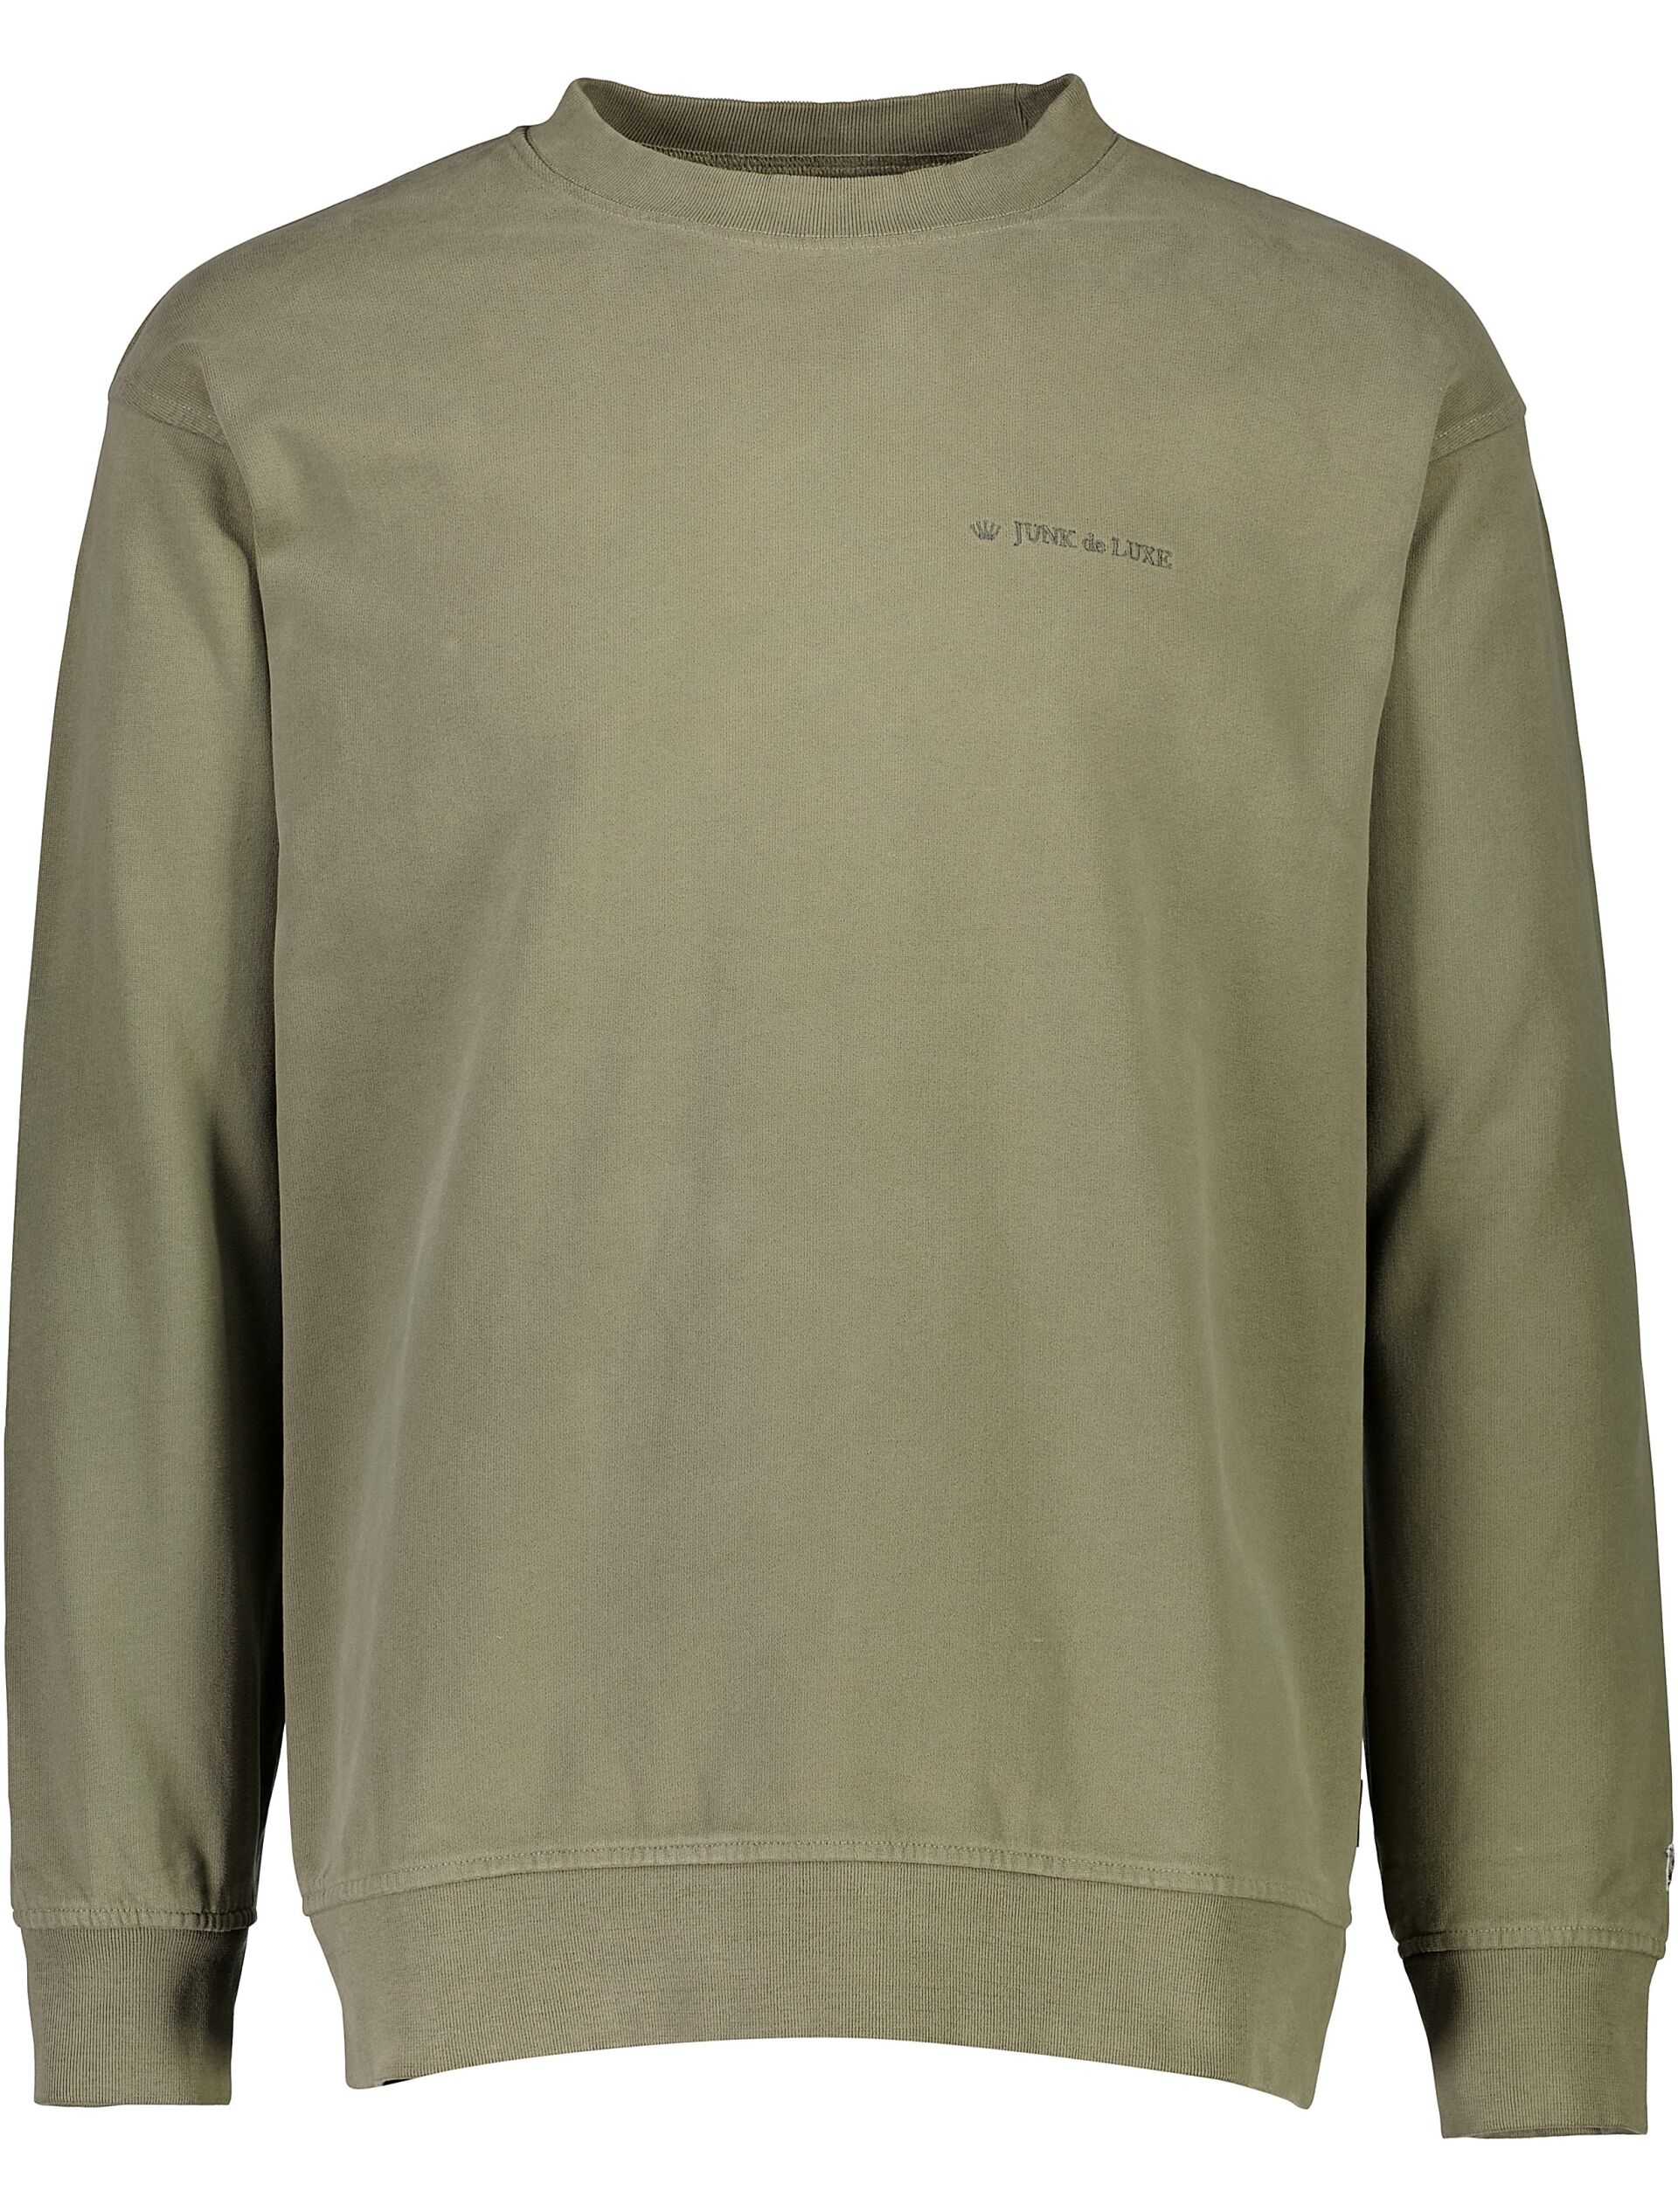 Sweatshirt Sweatshirt Grøn 60-702020